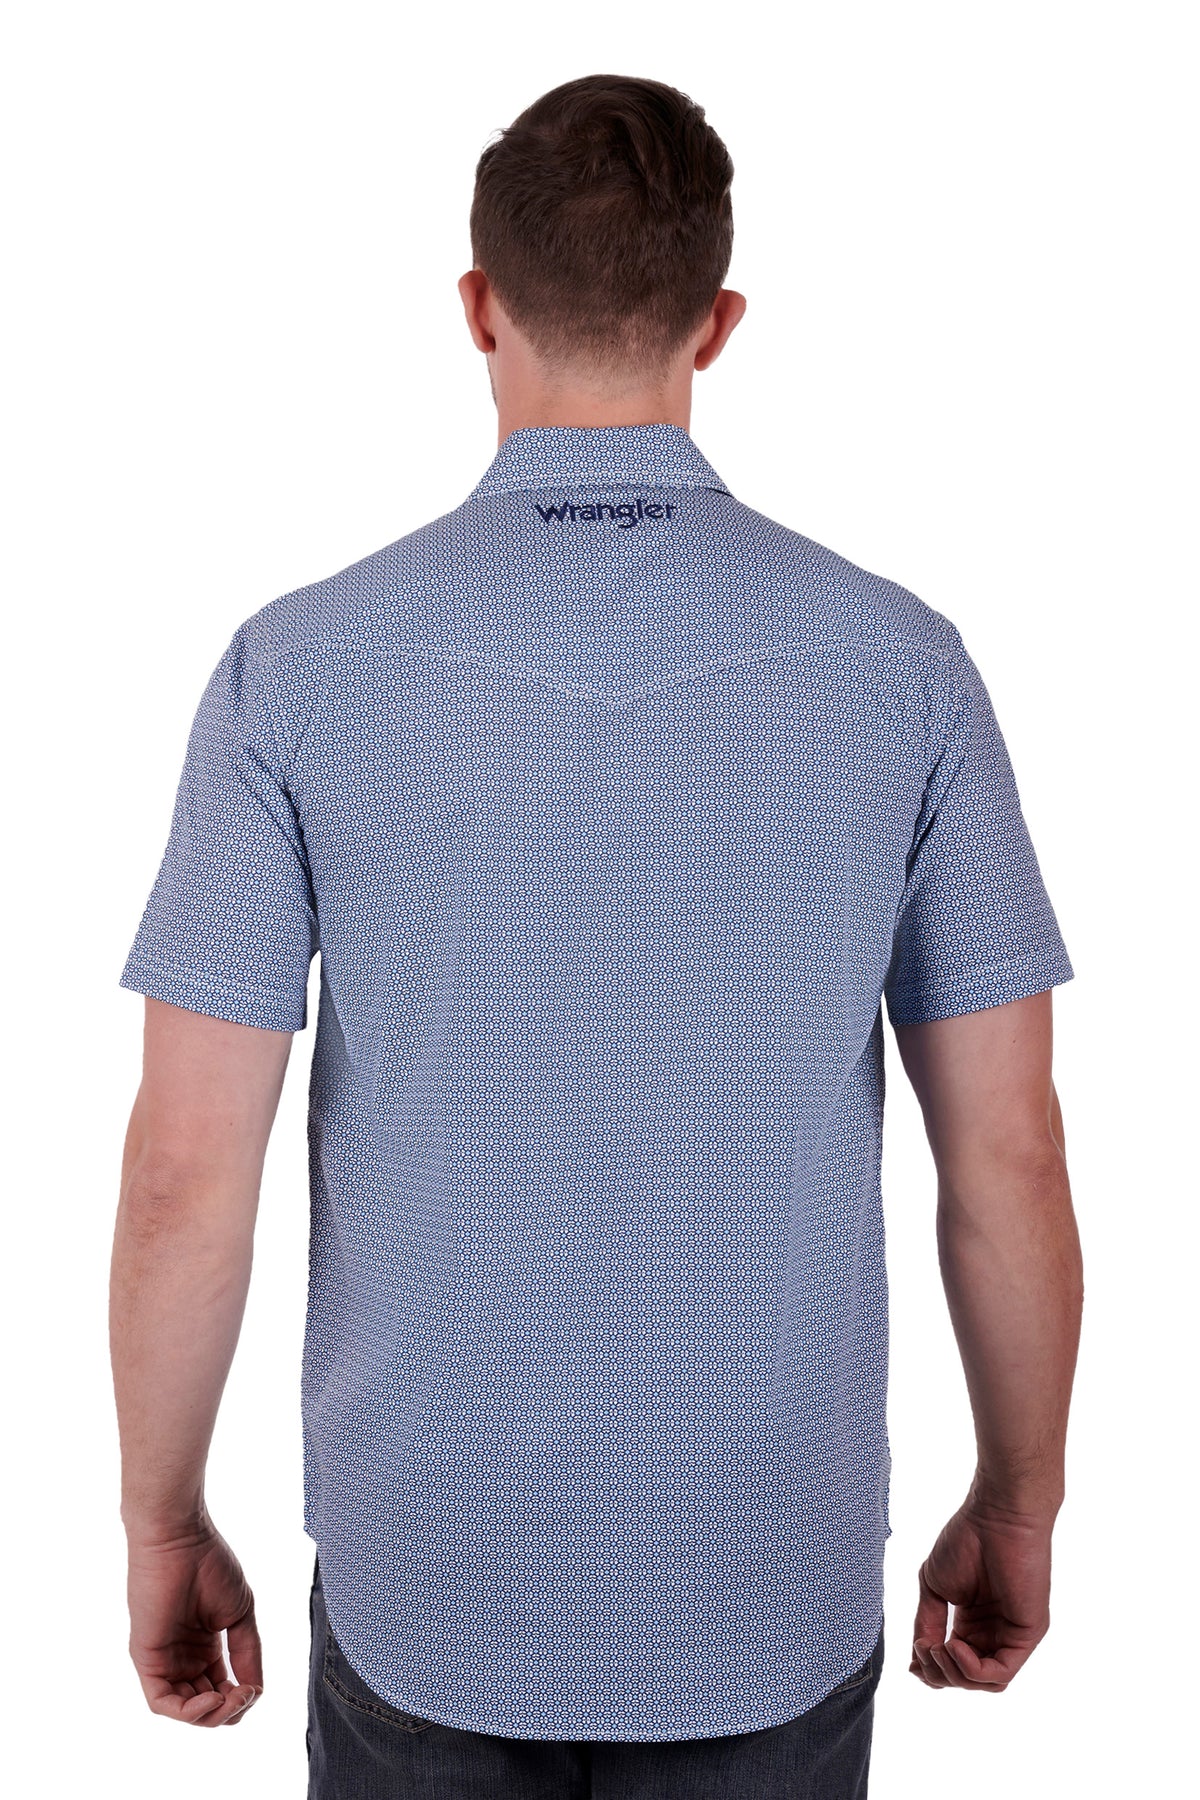 Wrangler Mens Graham Short Sleeve Shirt - Blue/White